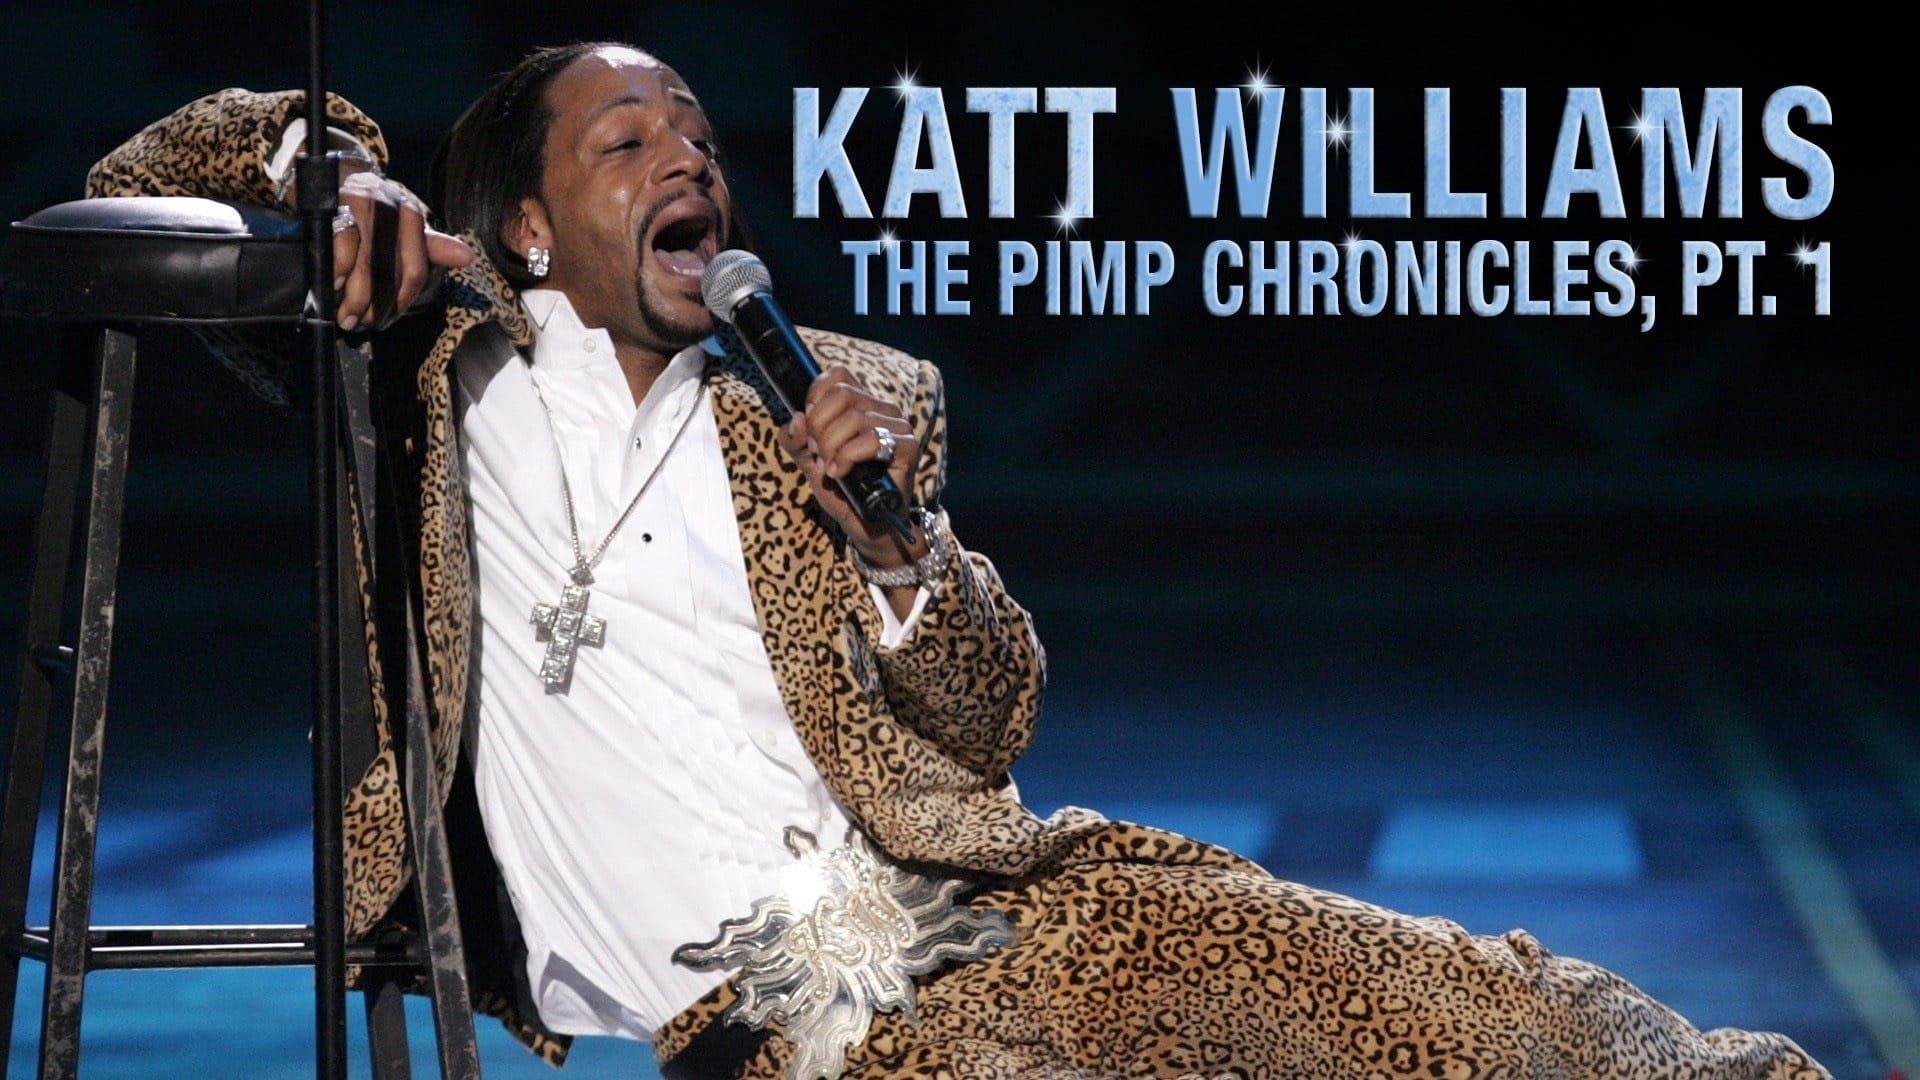 Katt Williams: The Pimp Chronicles Pt. 1 backdrop